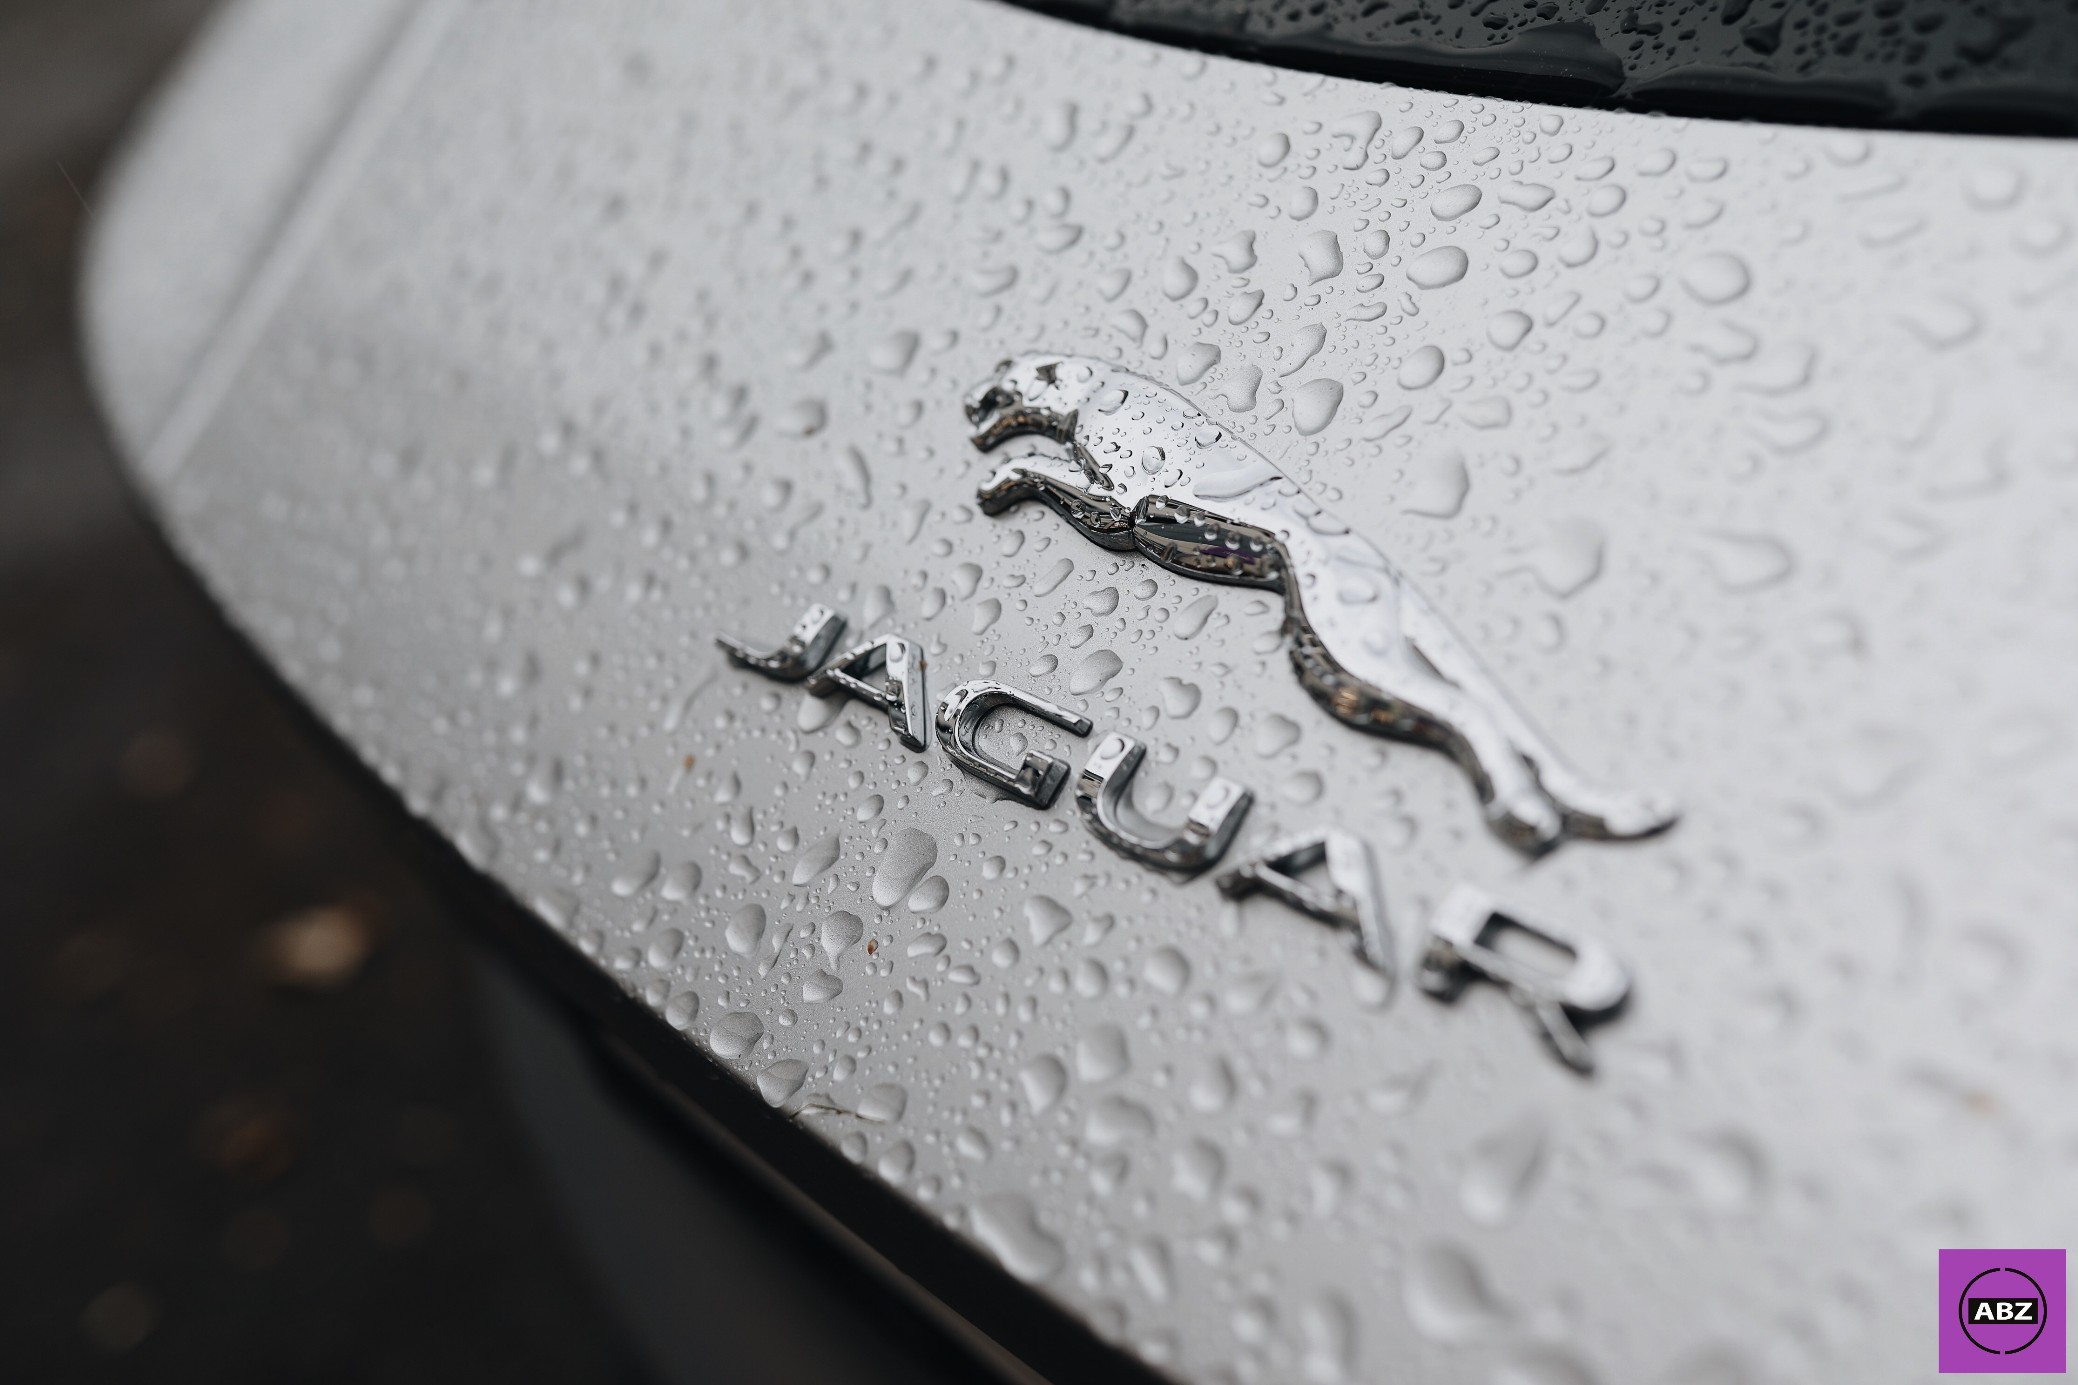 Фото Jaguar F Type — скорость под антигравийной пленкой